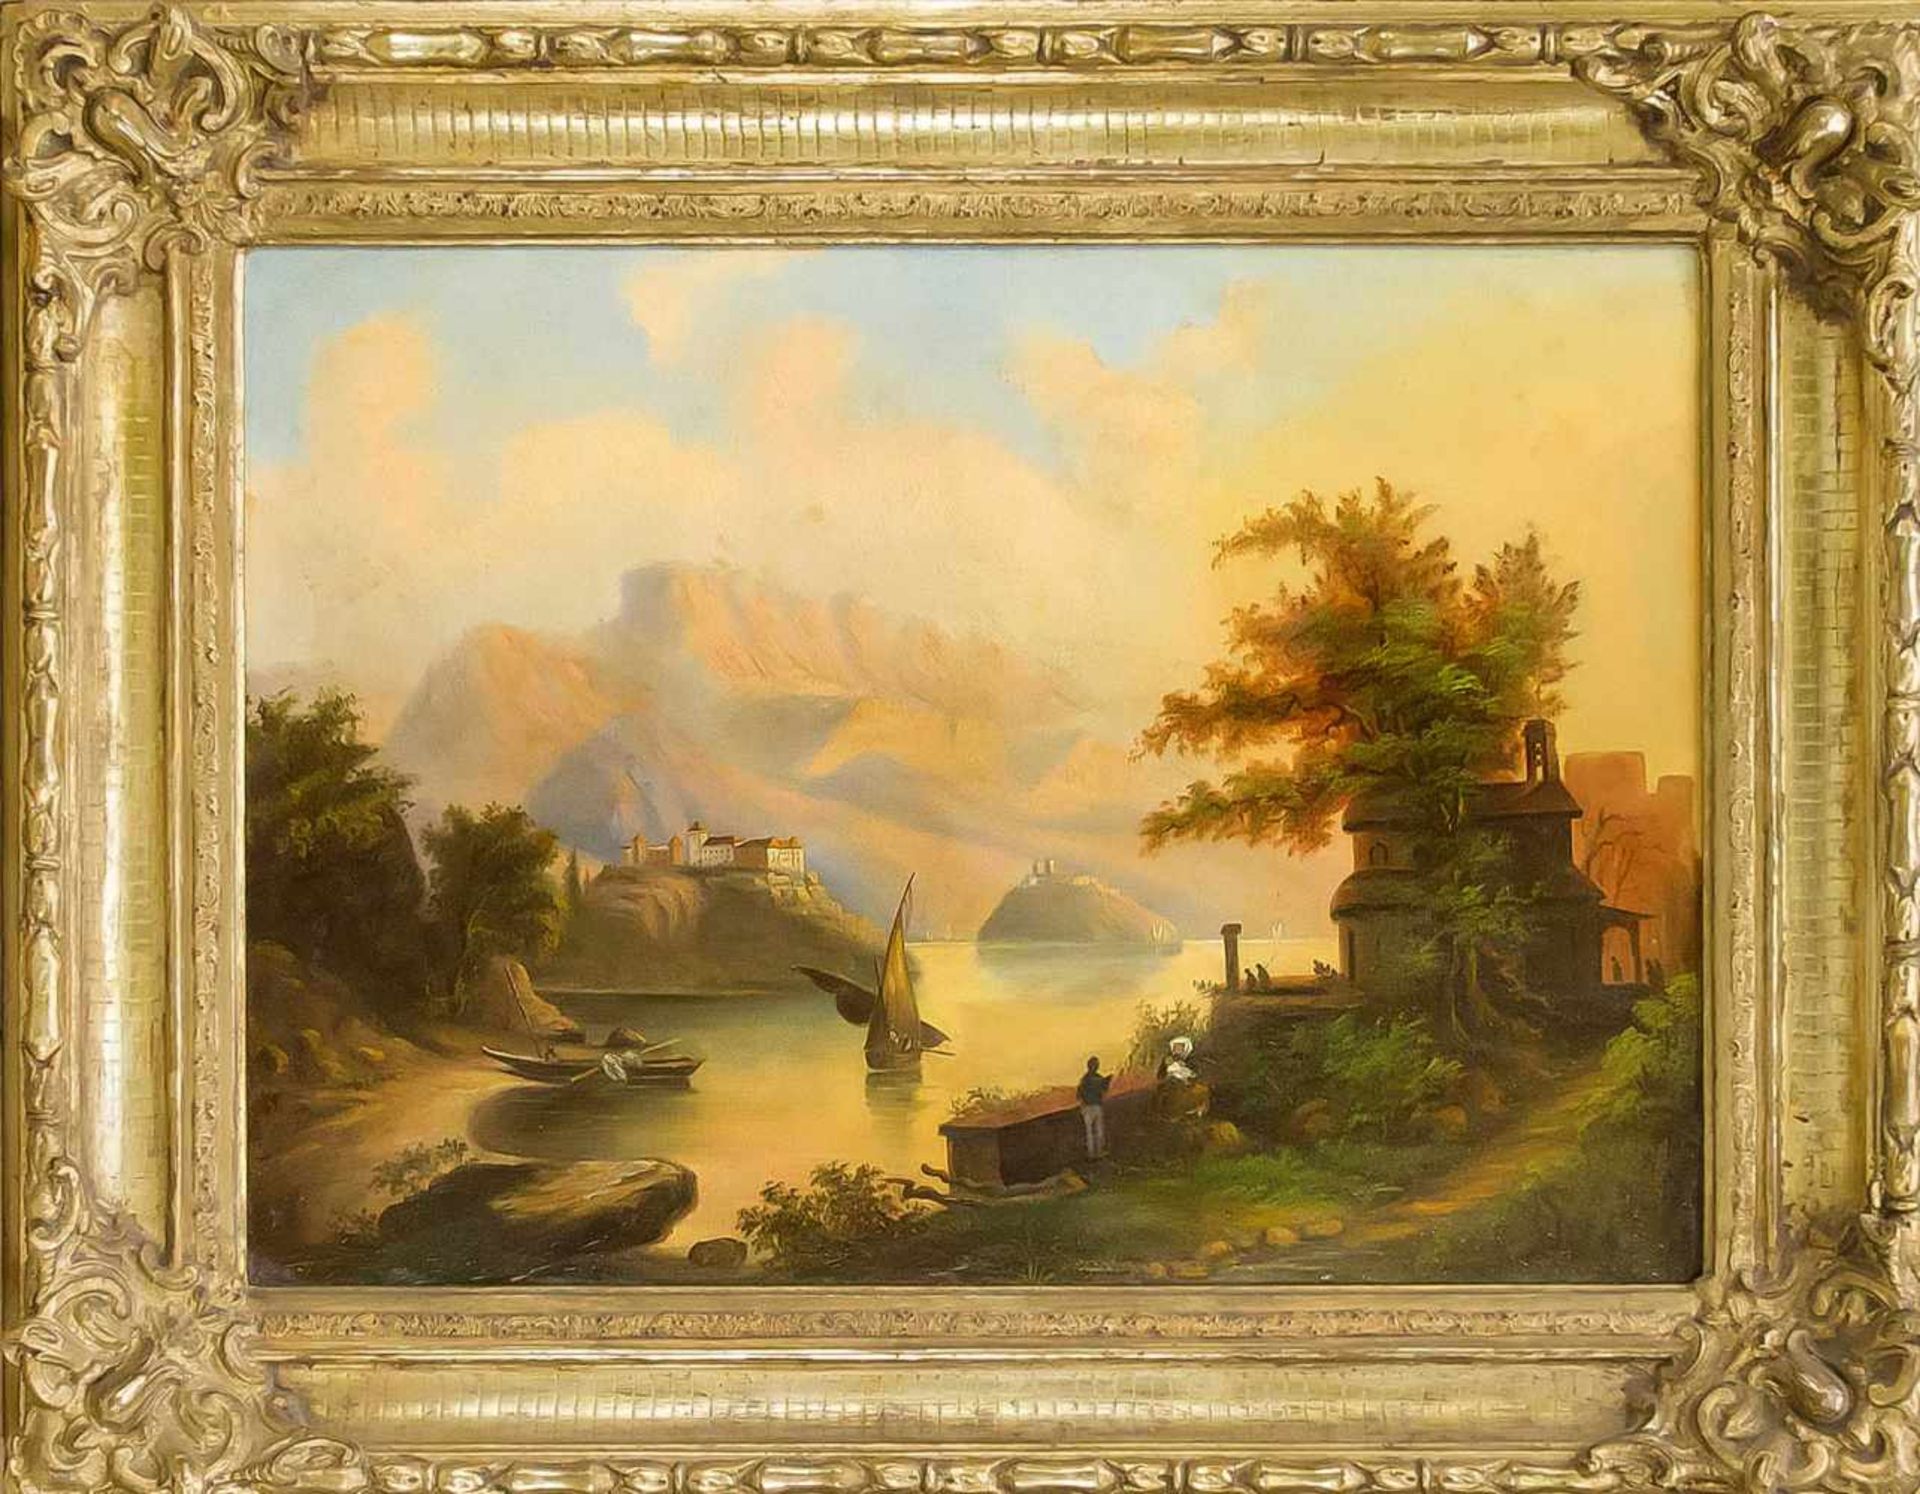 Anonymer Maler des 19. Jh., alpines Landschaftsidyll mit Burgen, Fischern undStaffagefiguren, Öl auf